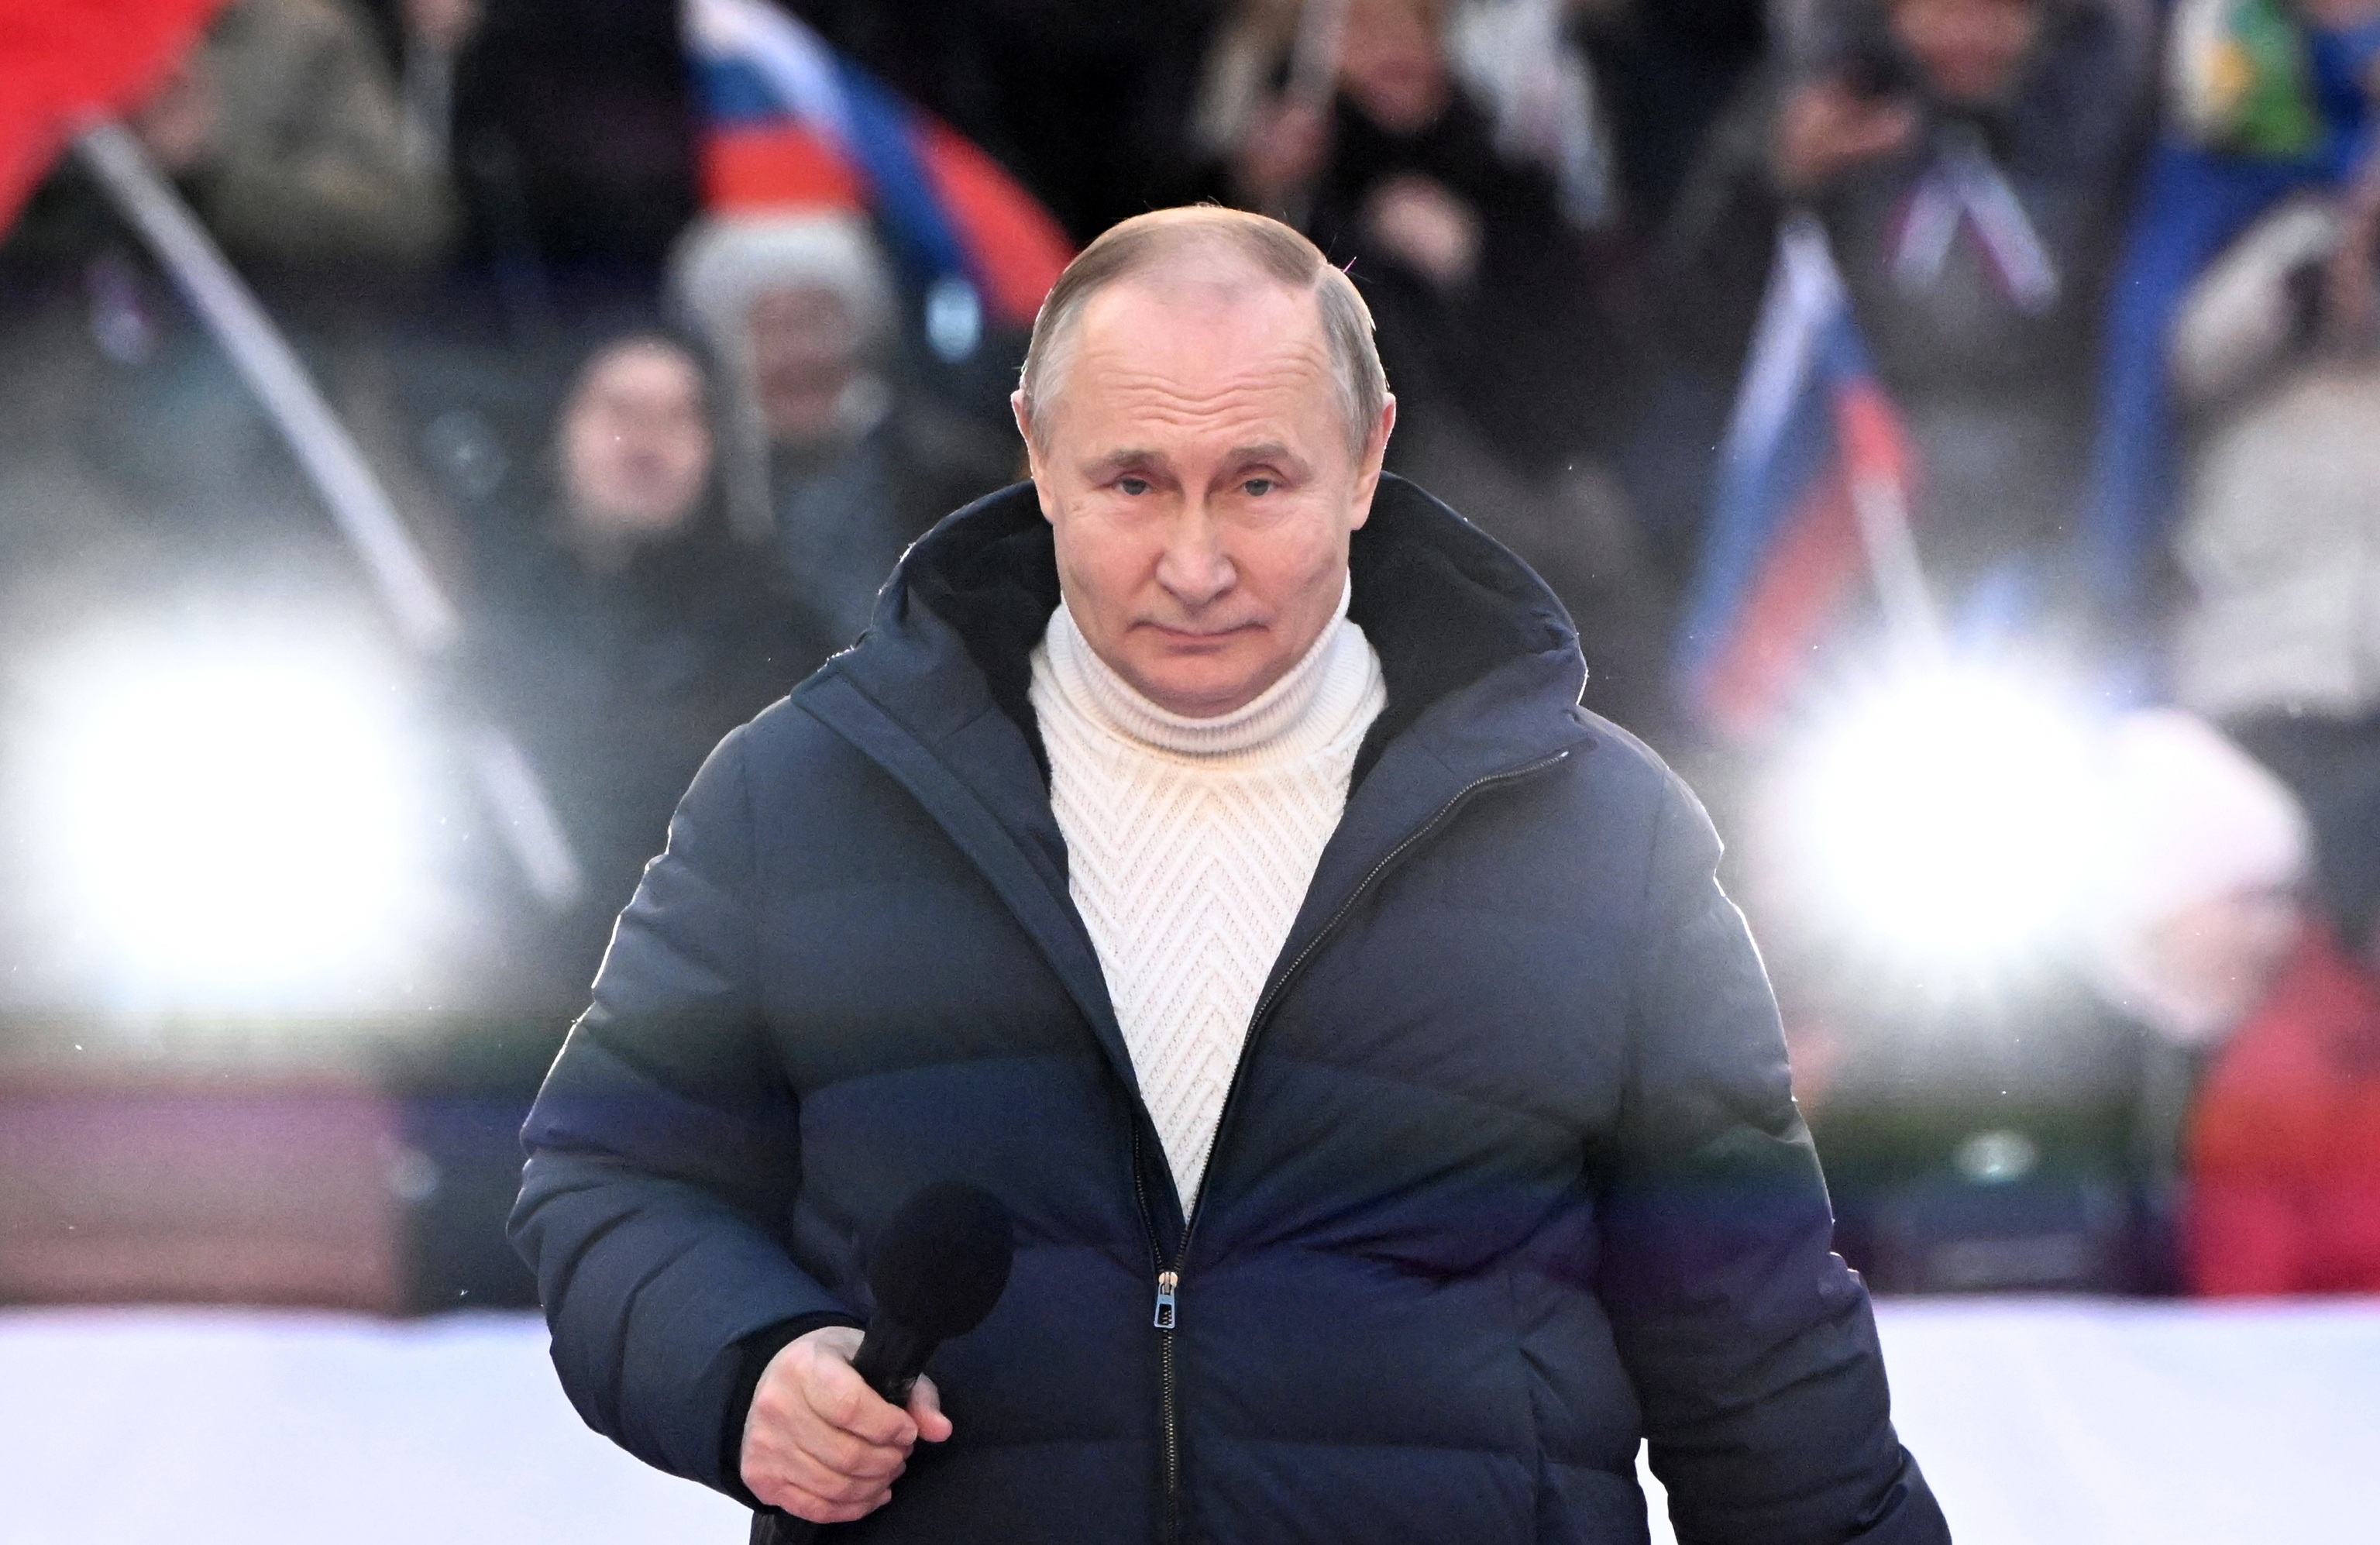 Putin en el acto celebrado en el estadio Luzhniki.